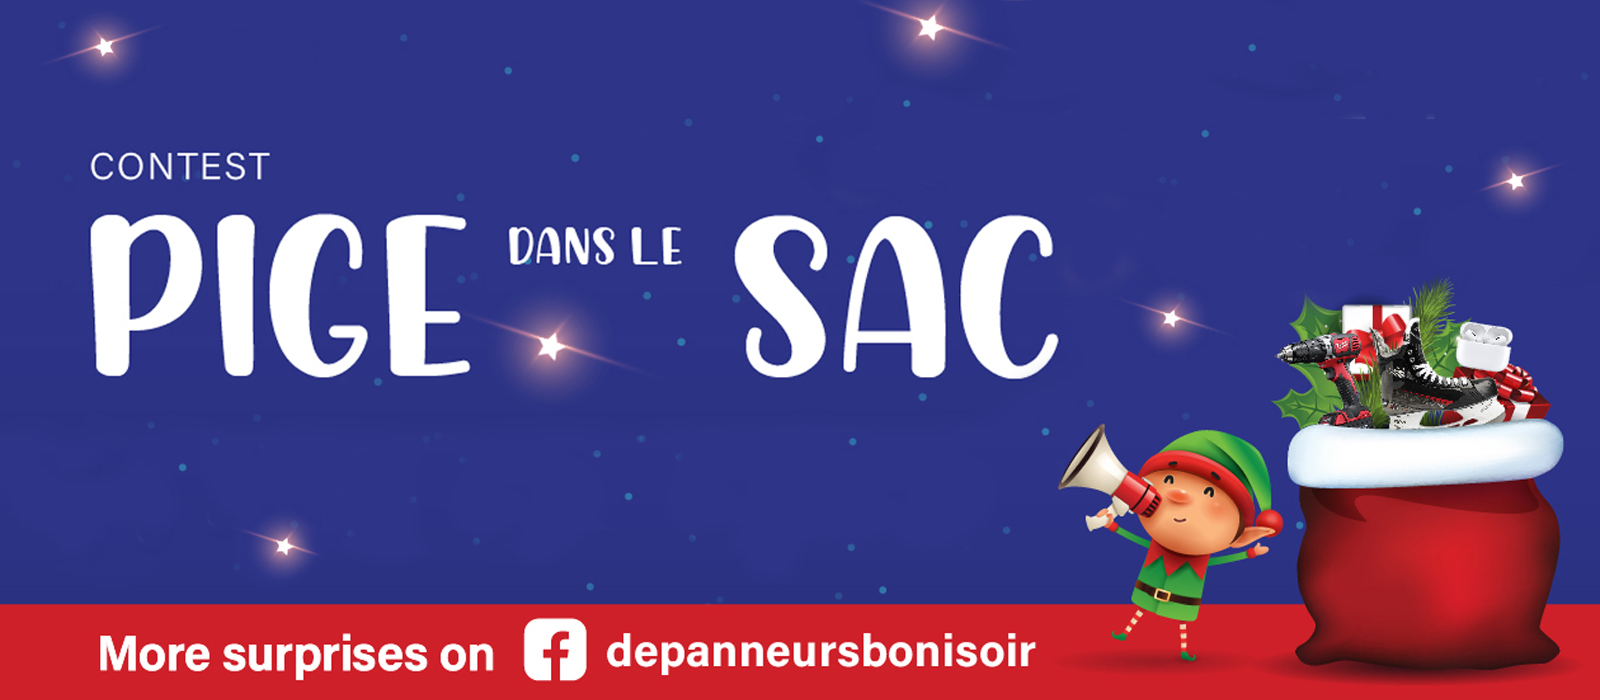 Text Reading "Contest Pige Dans le Sac. See more surprises on facebook page of depanneursbonisoir."